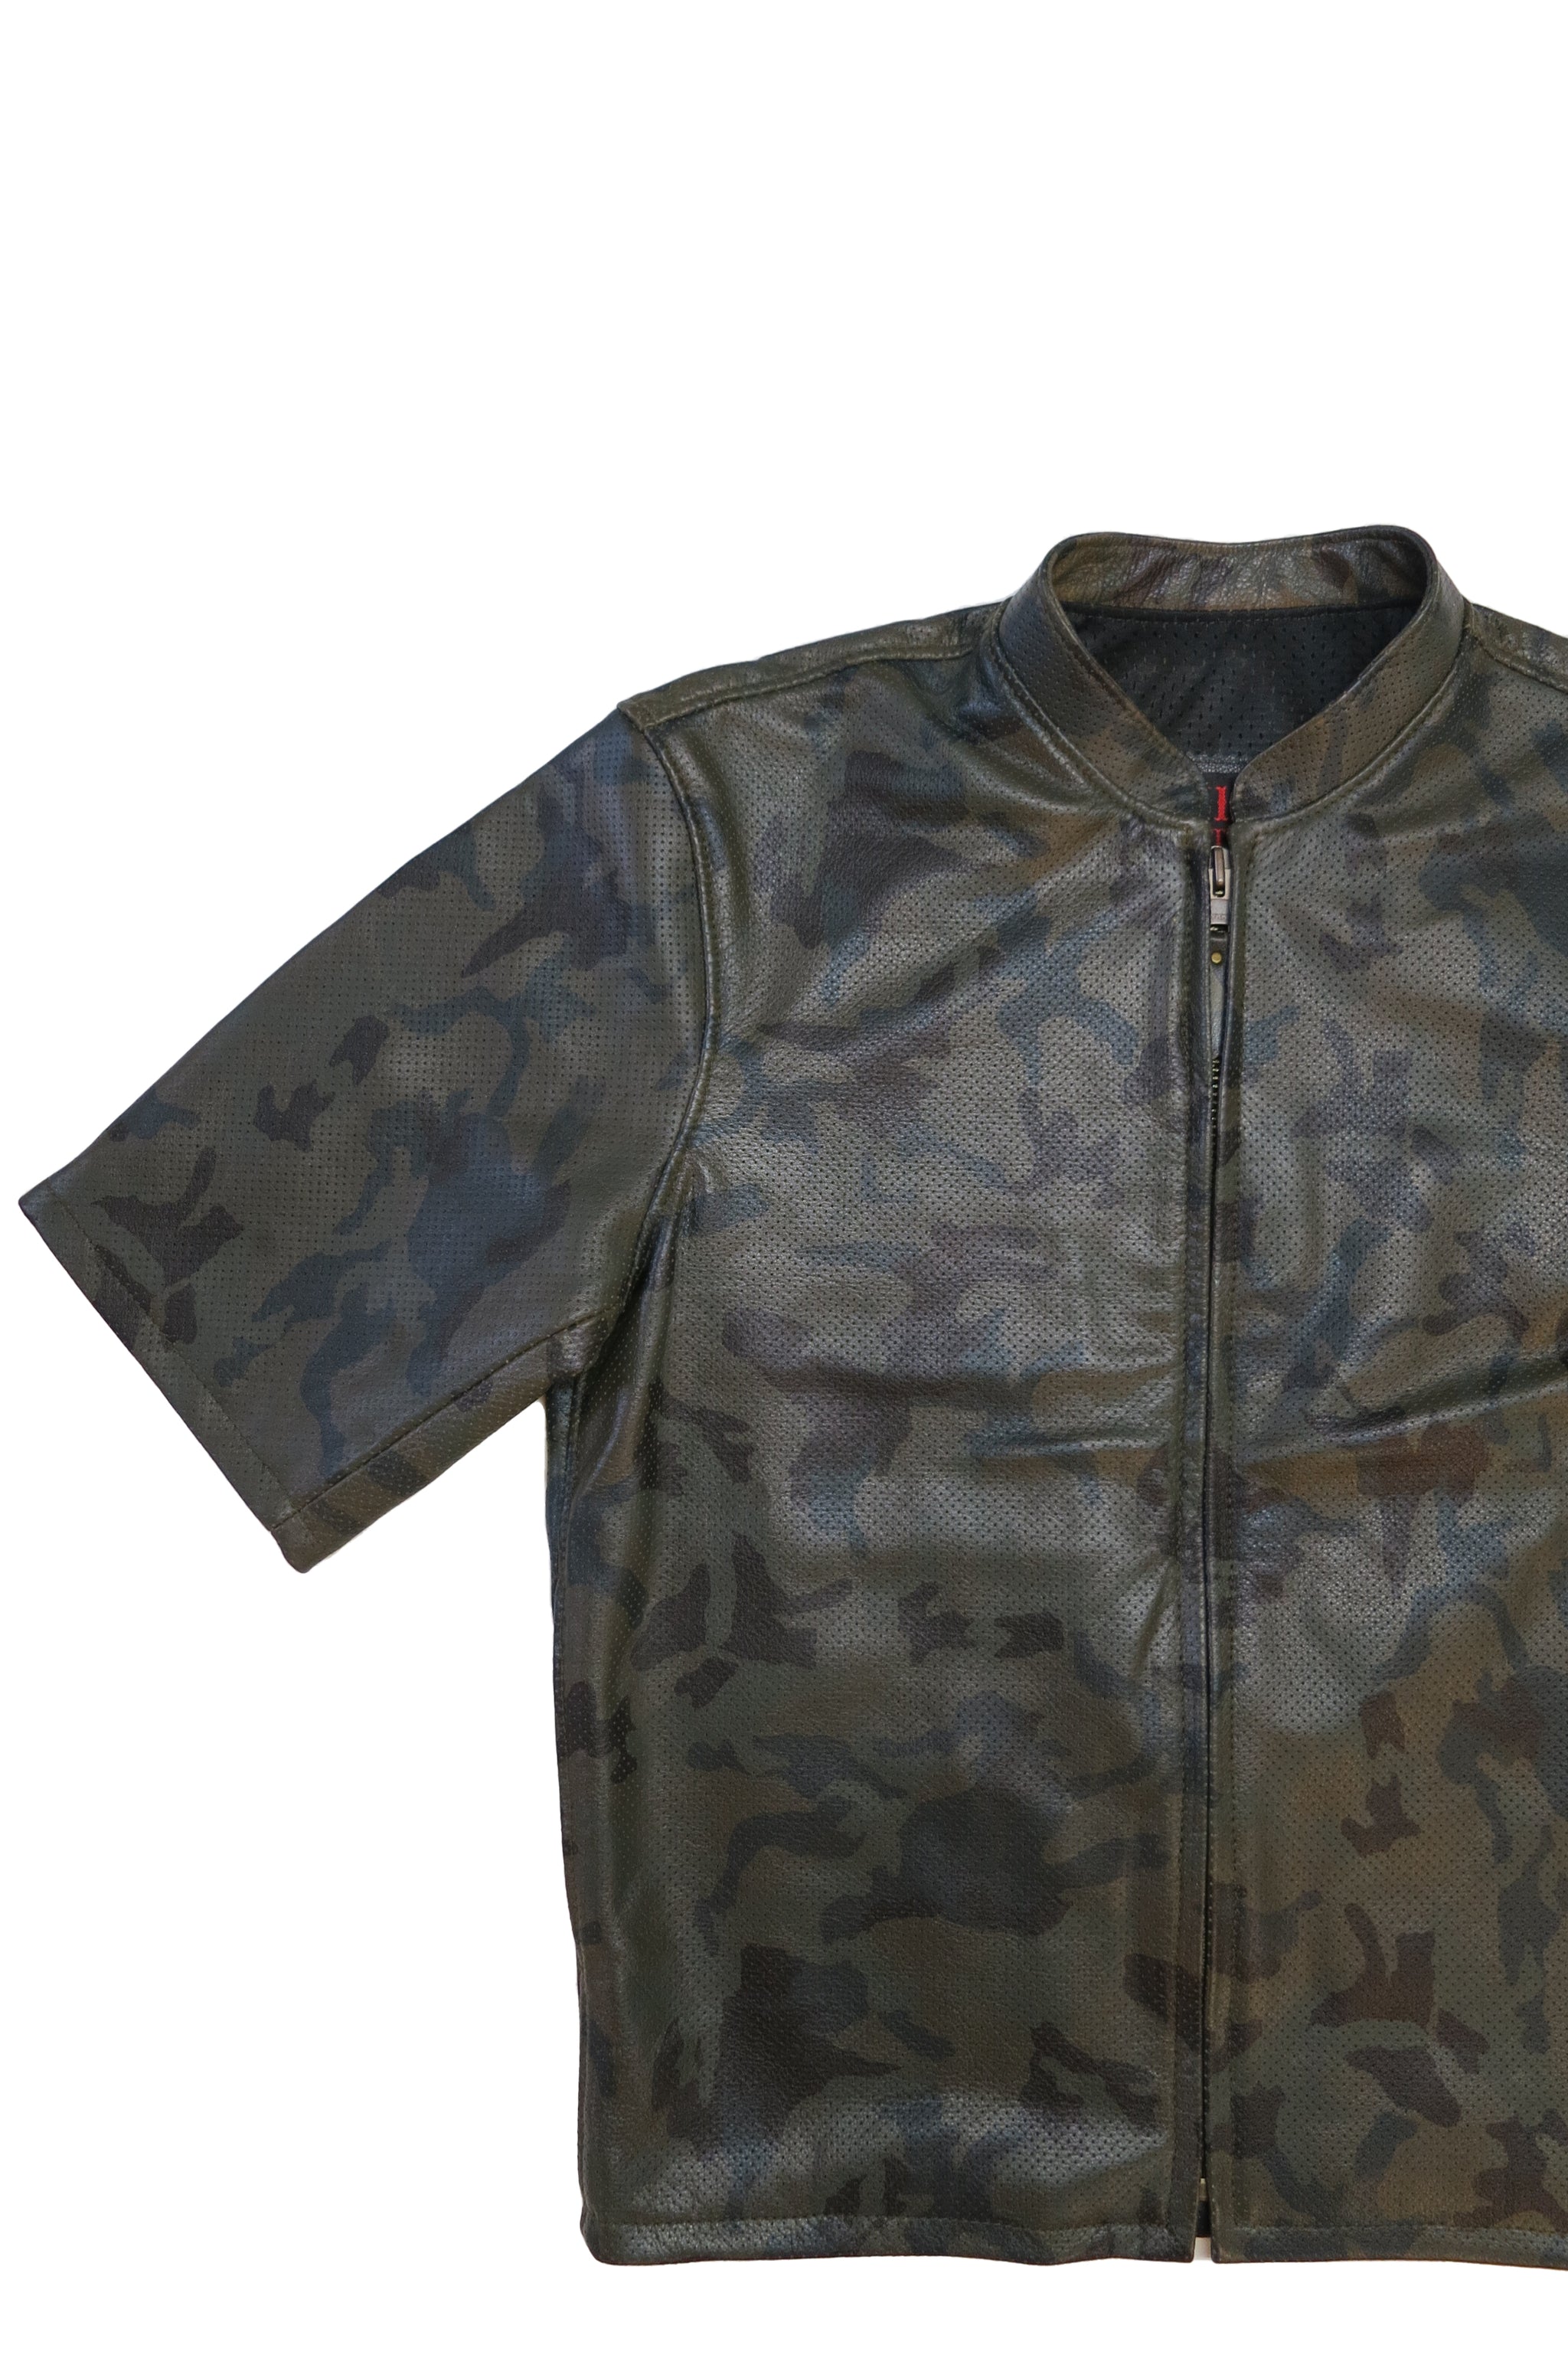 415 Leather 3/4 Sleeve Camouflage Perforated Jacket - 415 Clothing, Inc.